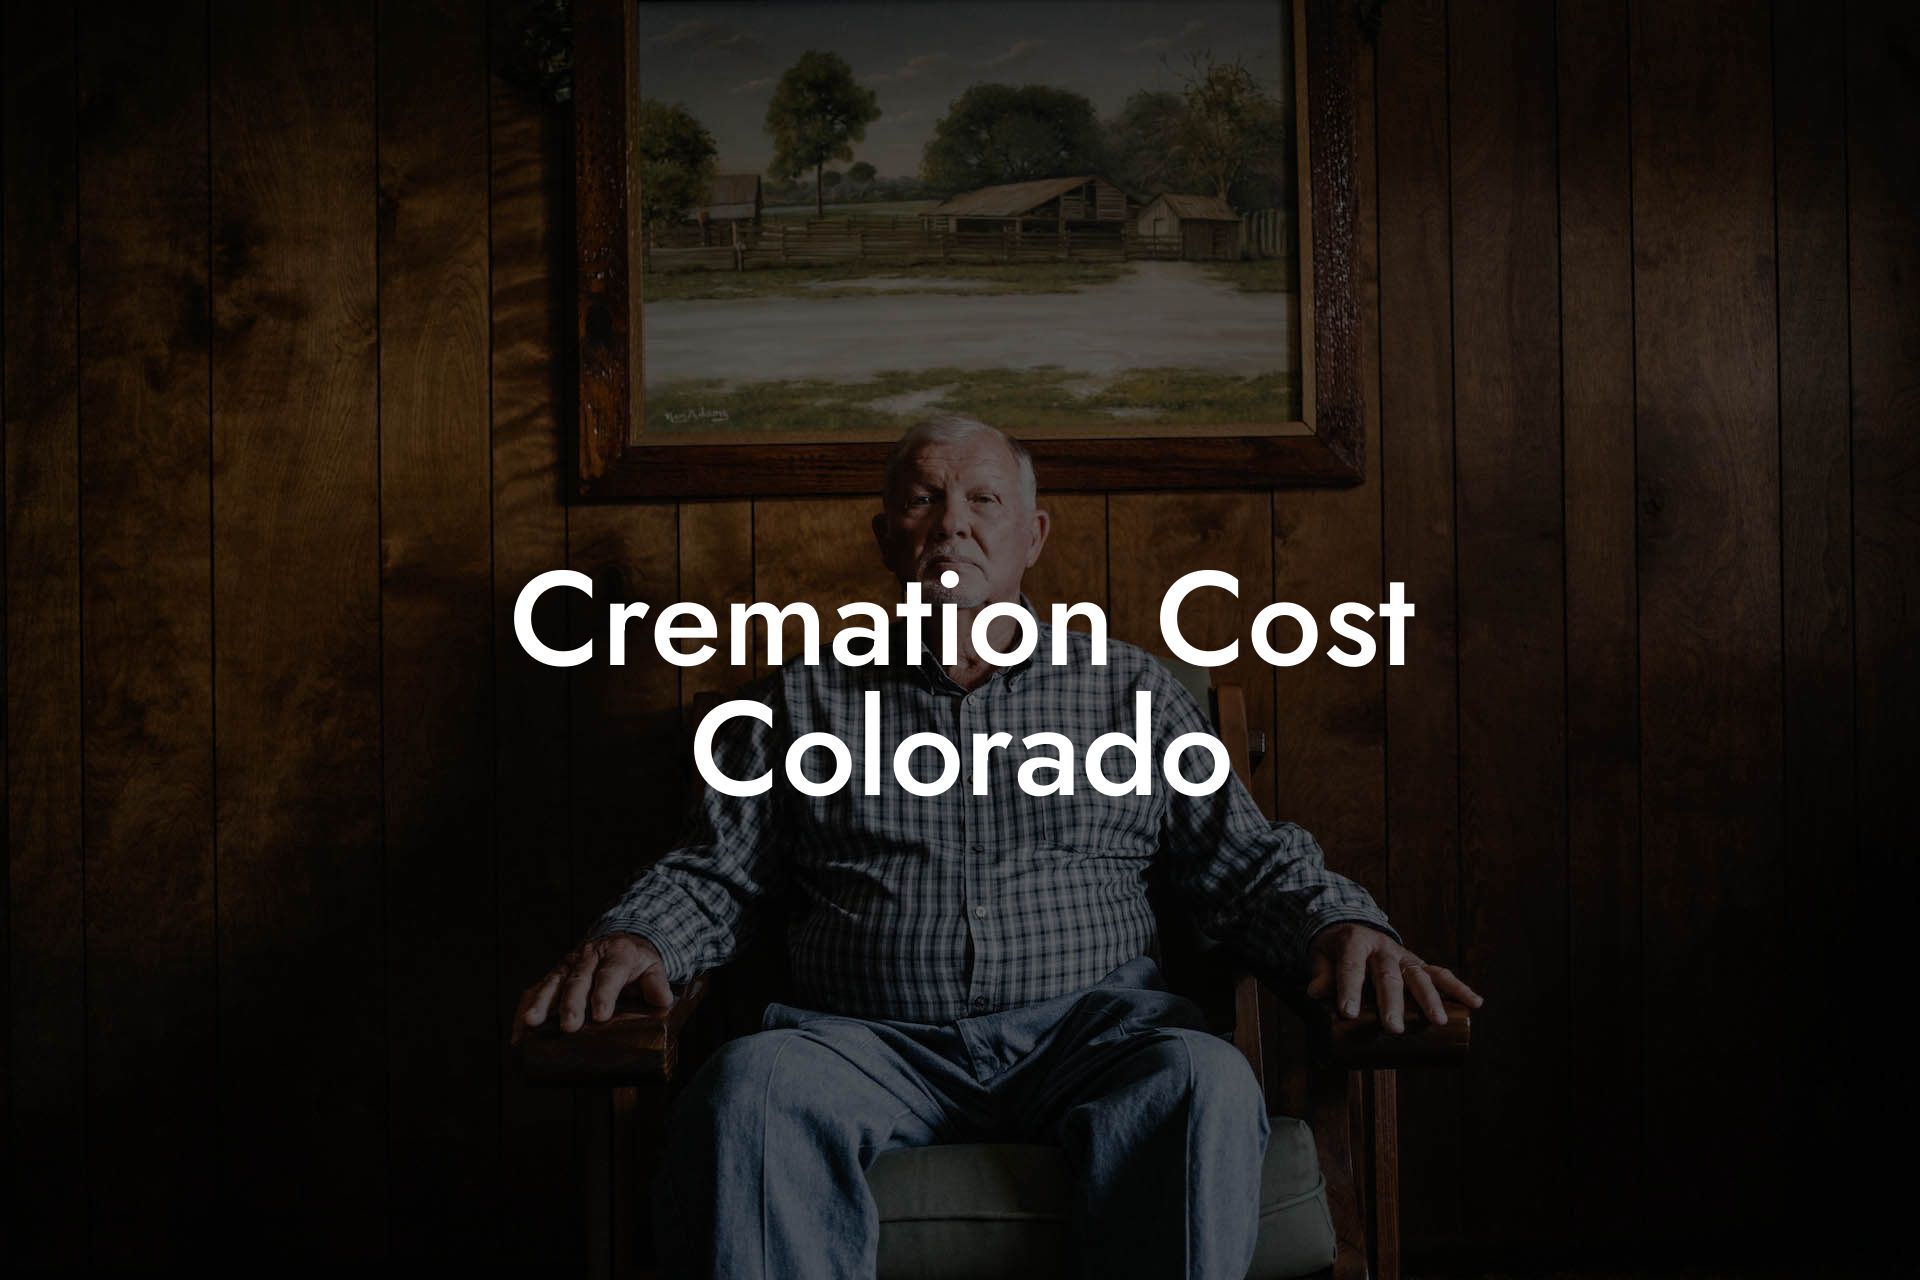 Cremation Cost Colorado